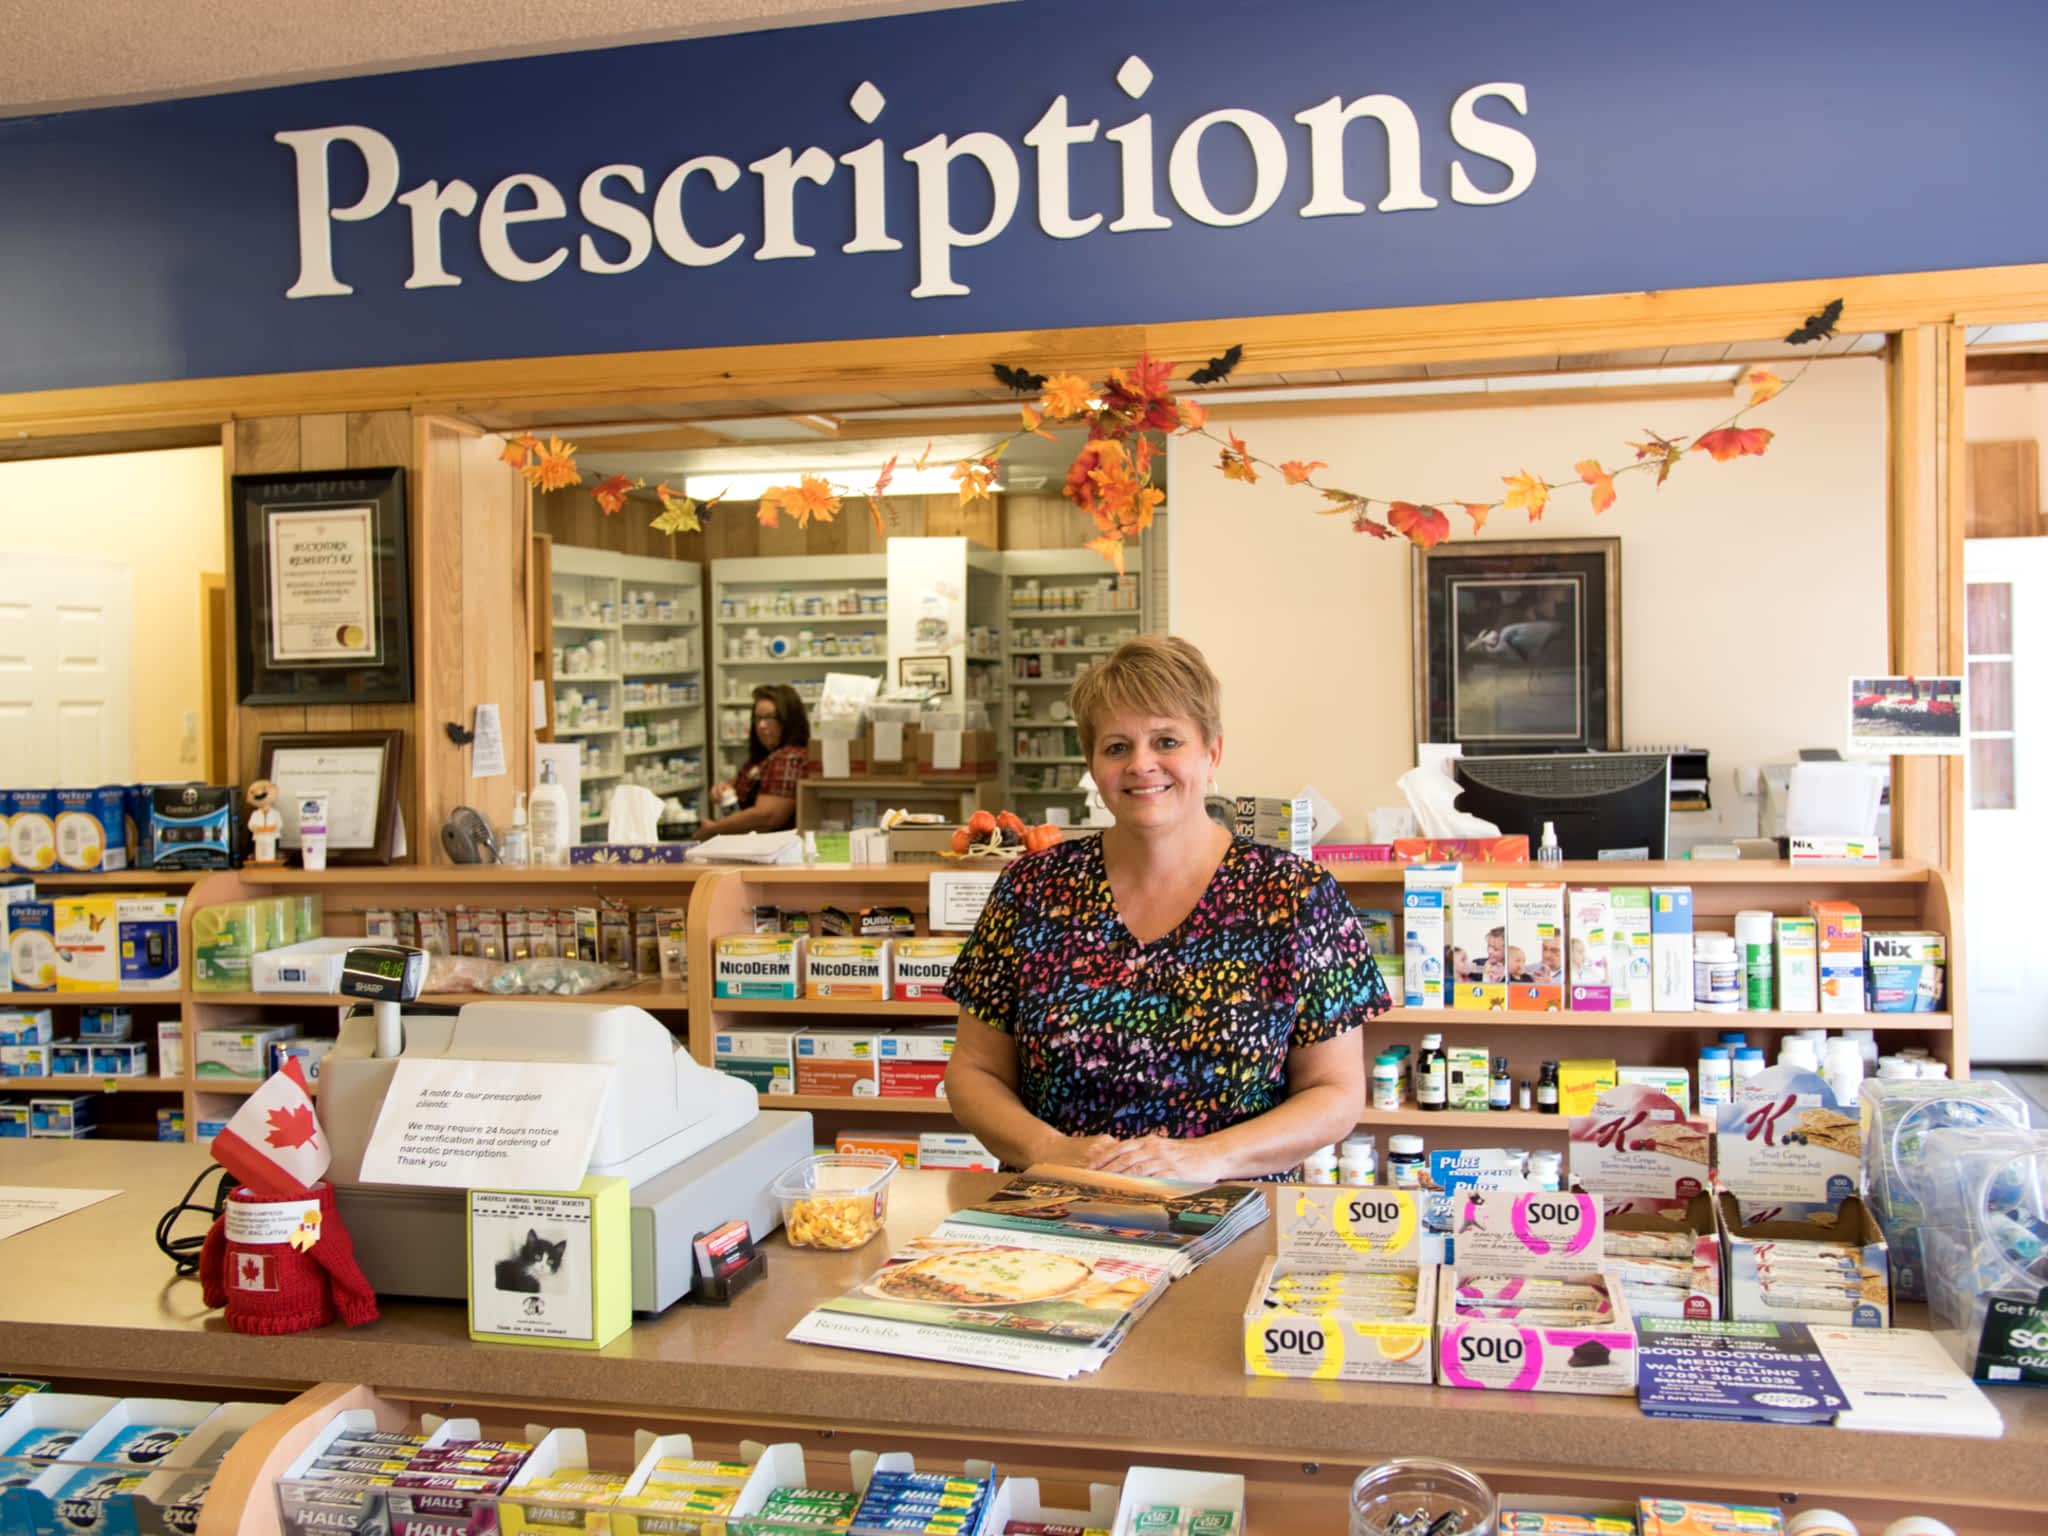 photo Remedy'sRx - Buckhorn Pharmacy